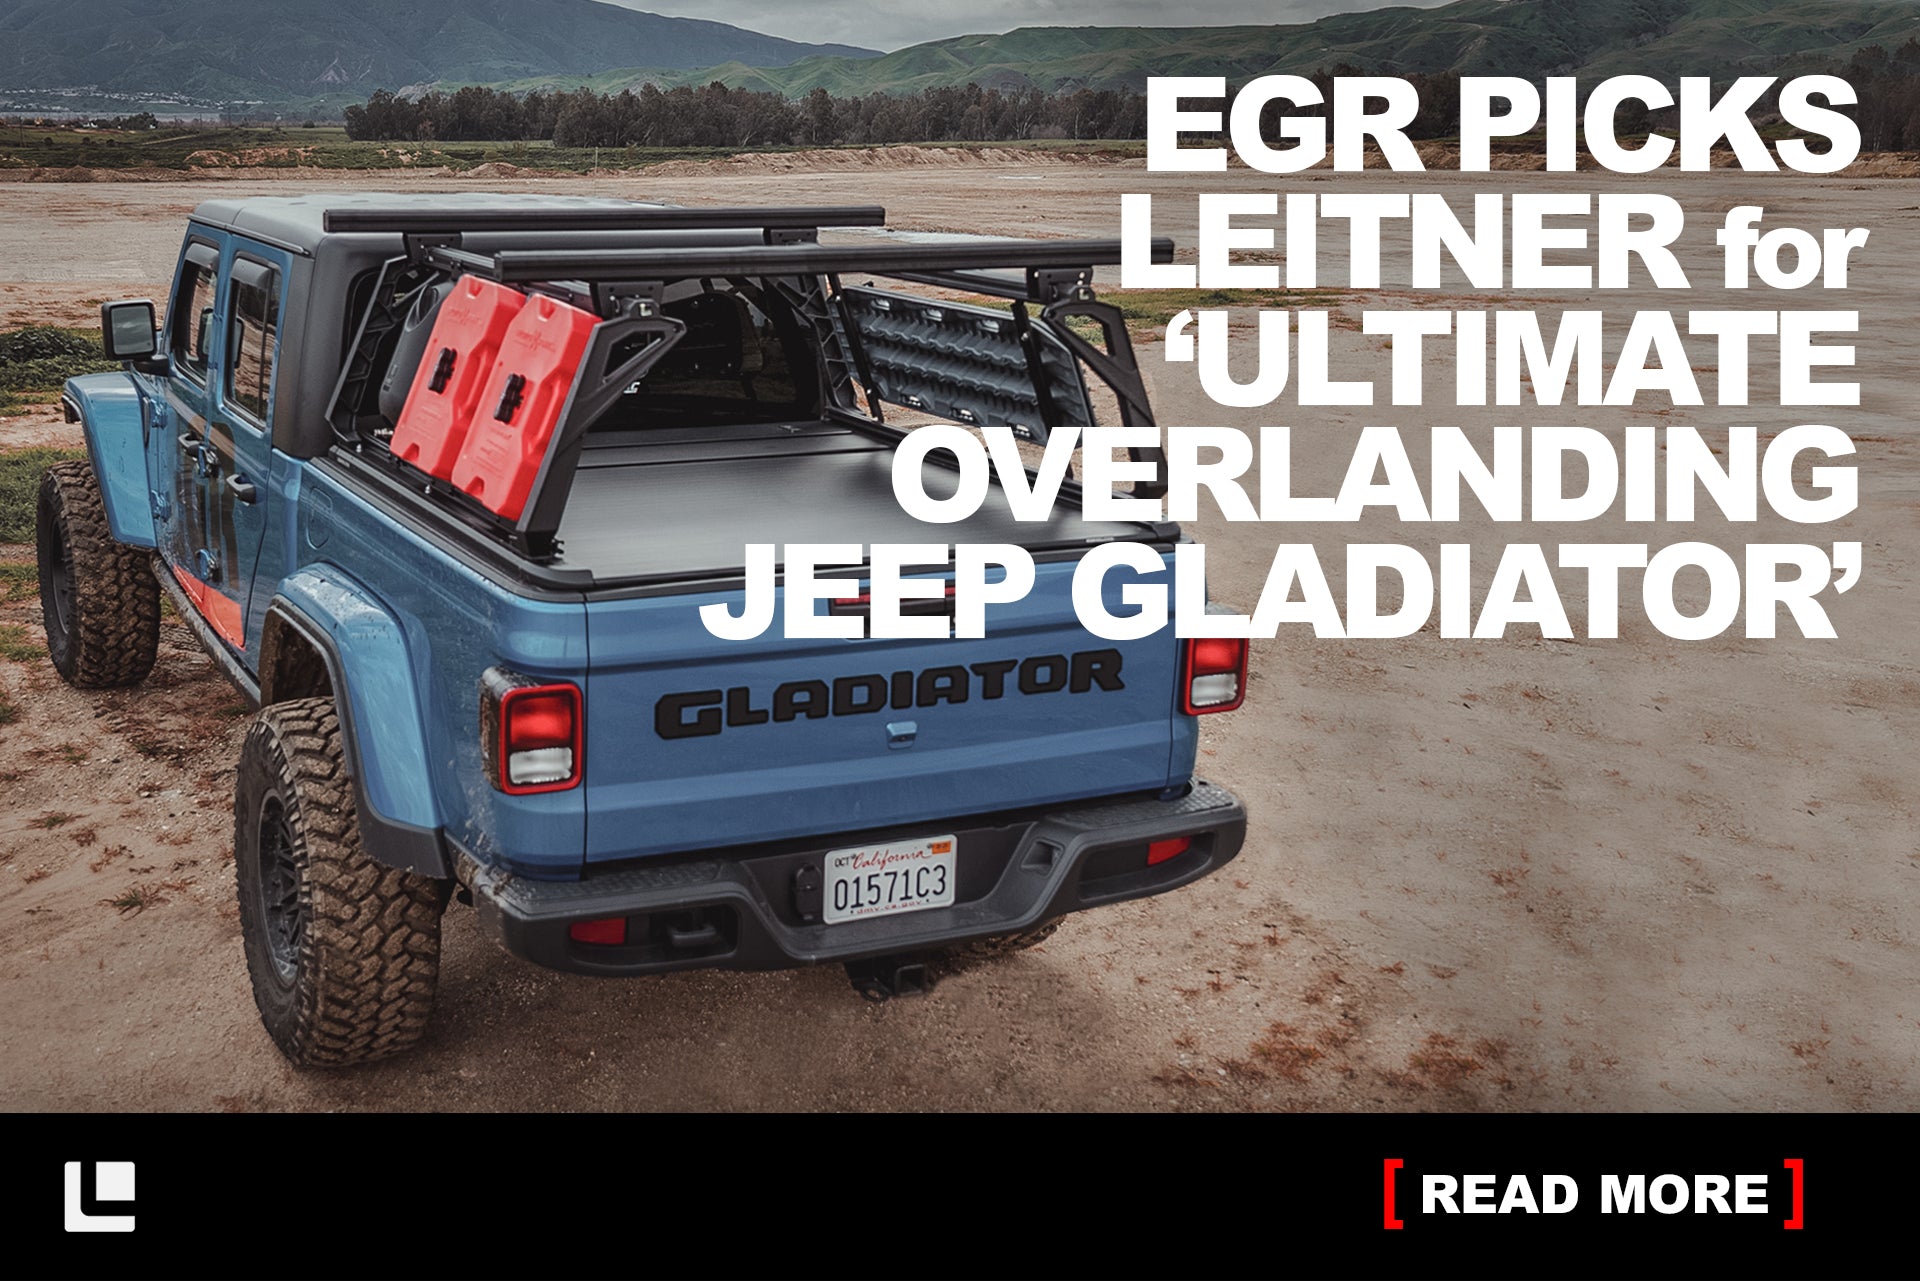 EGR Picks Leitner Active Cargo System for ‘Ultimate Overlanding Jeep Gladiator’